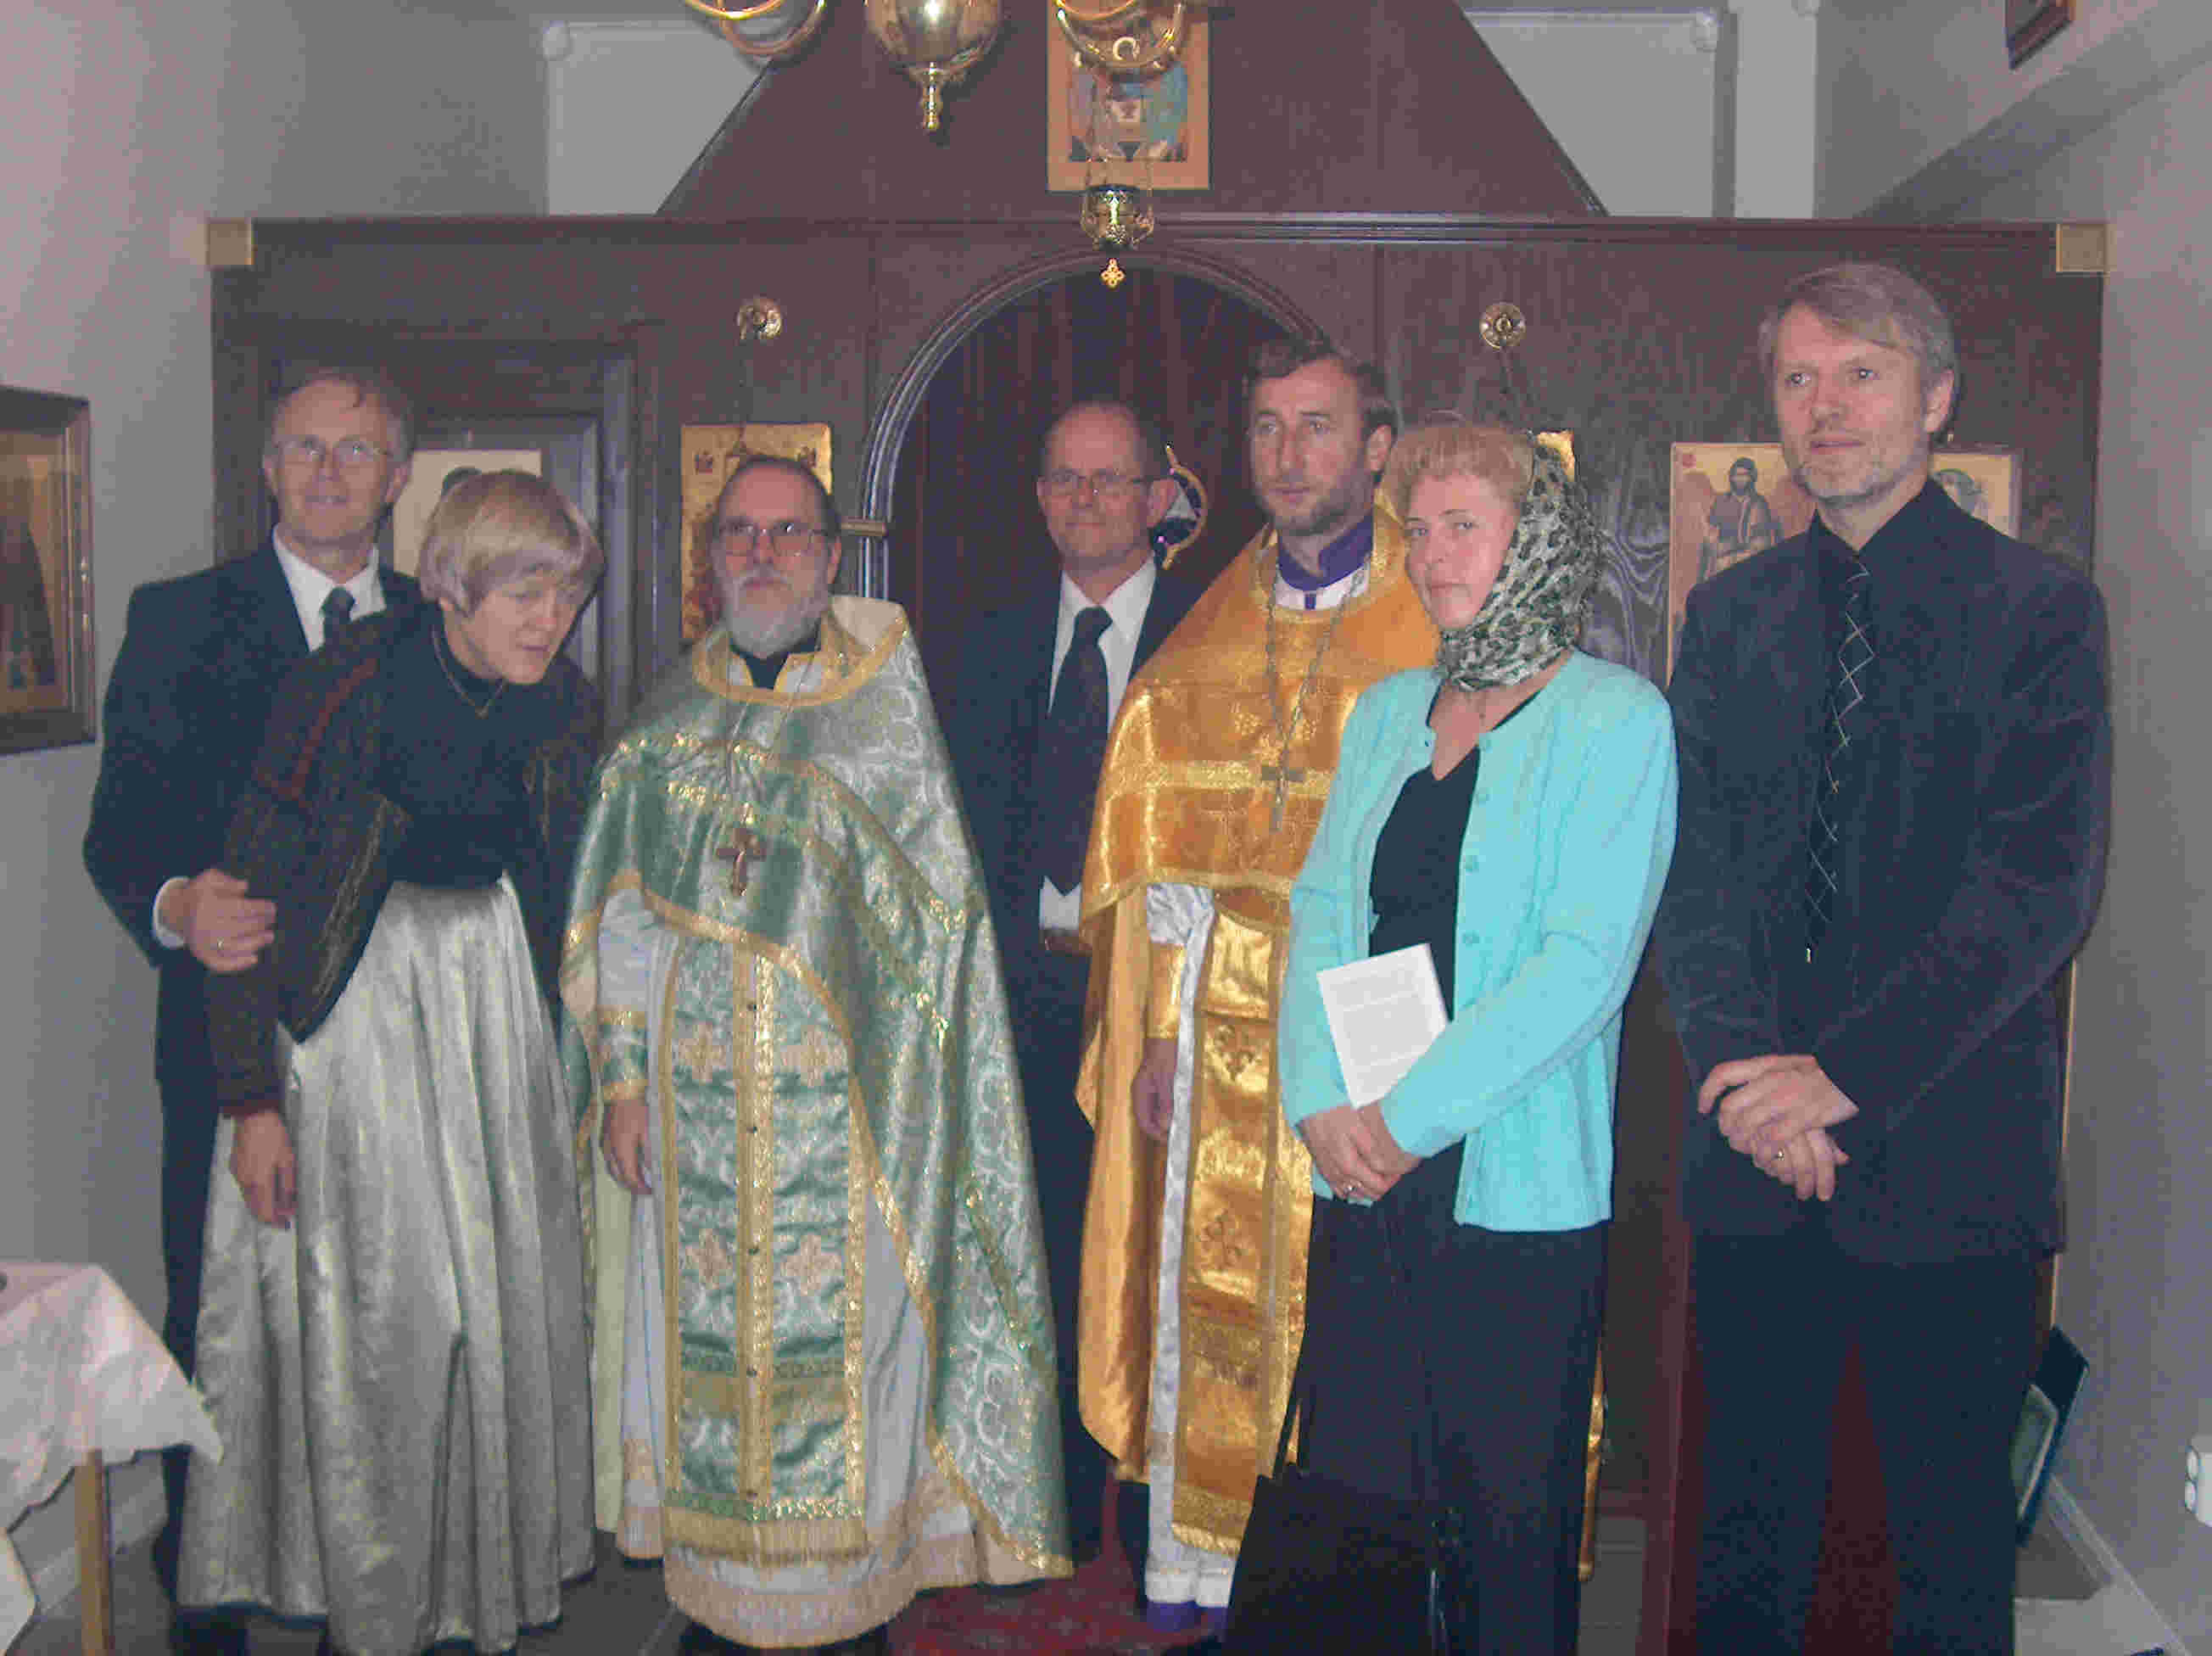 PERSHA SLYZBA. Fr. Johannes, Fr. Myron, Mat, Svitlana, gjester og medlemmer av kirkeforeningen